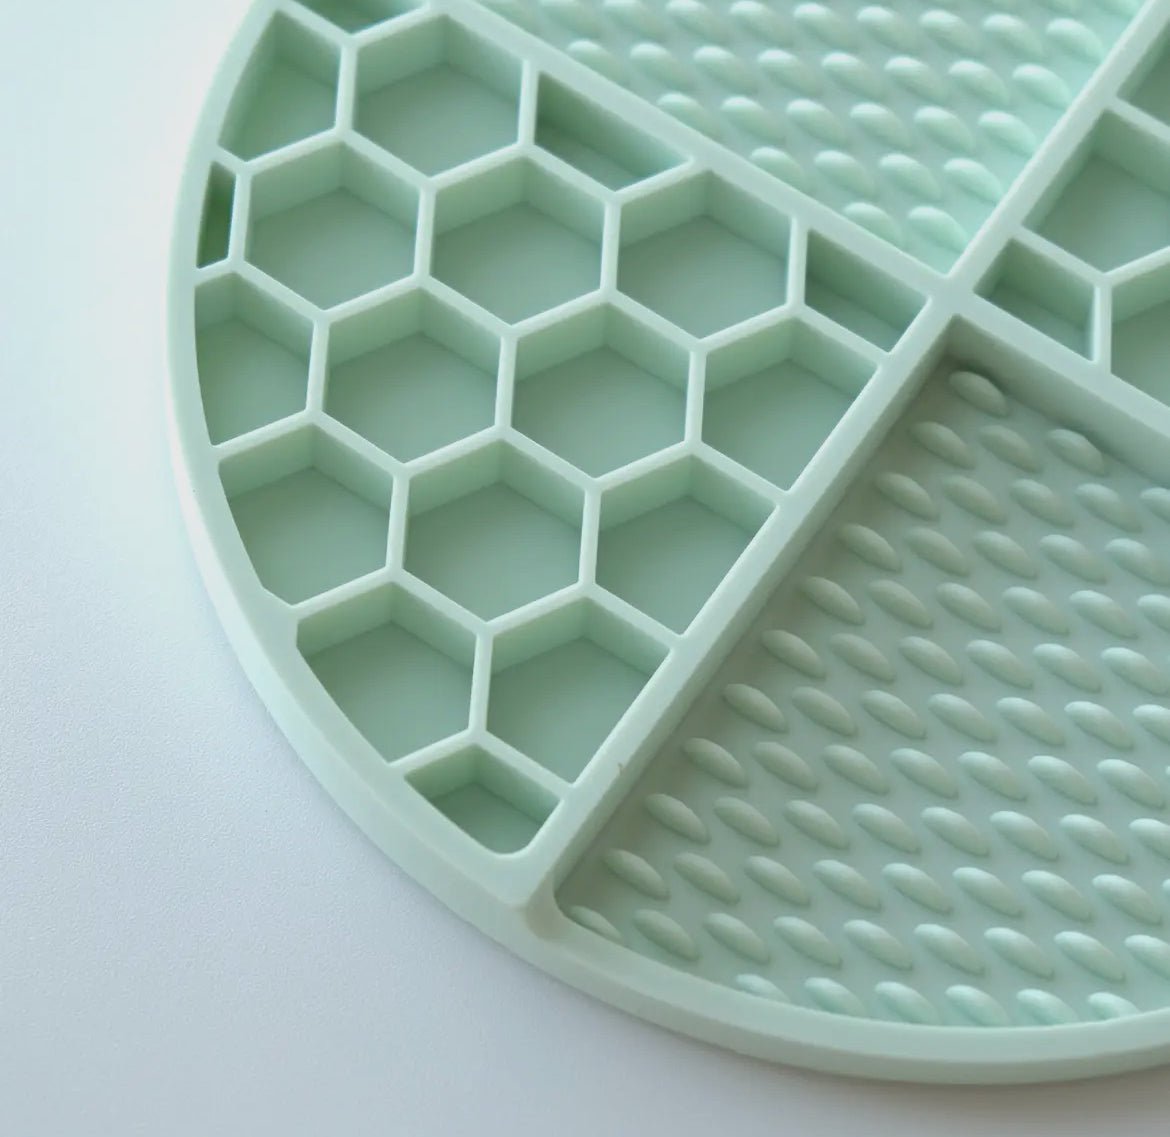 Joliepaw's Honeycomb Multisurface Lick Mat - Finley's Shop